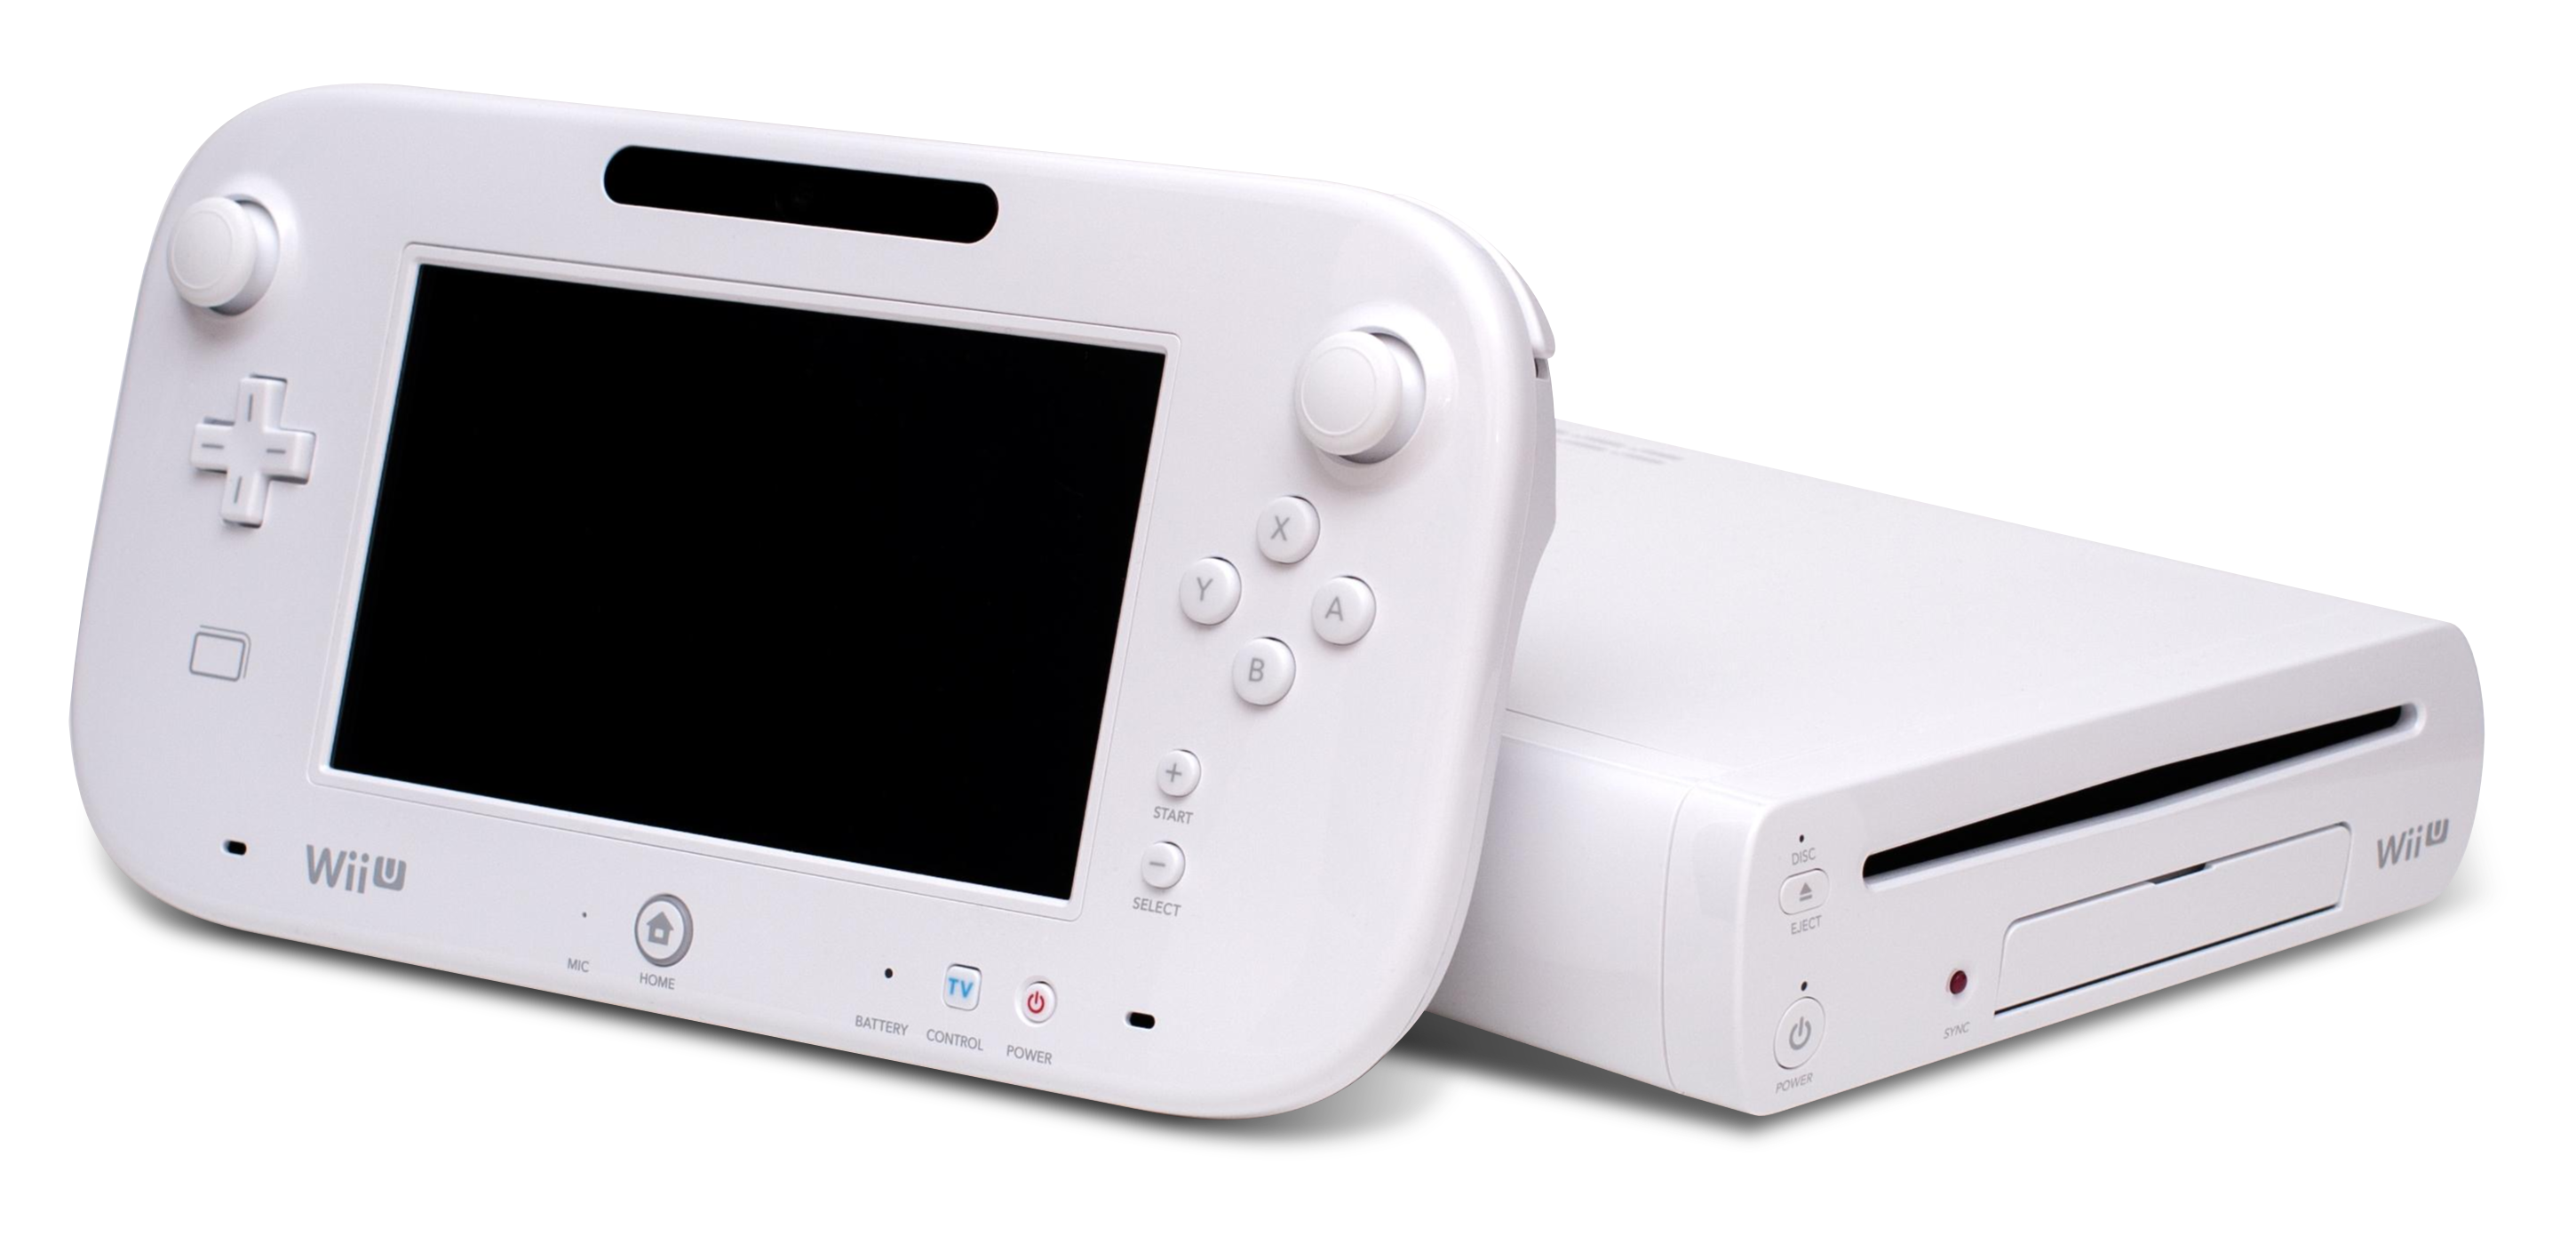 vorst in de buurt hebzuchtig 10 grote verschillen tussen Nintendo Wii U en Wii: actueel schoolnieuws